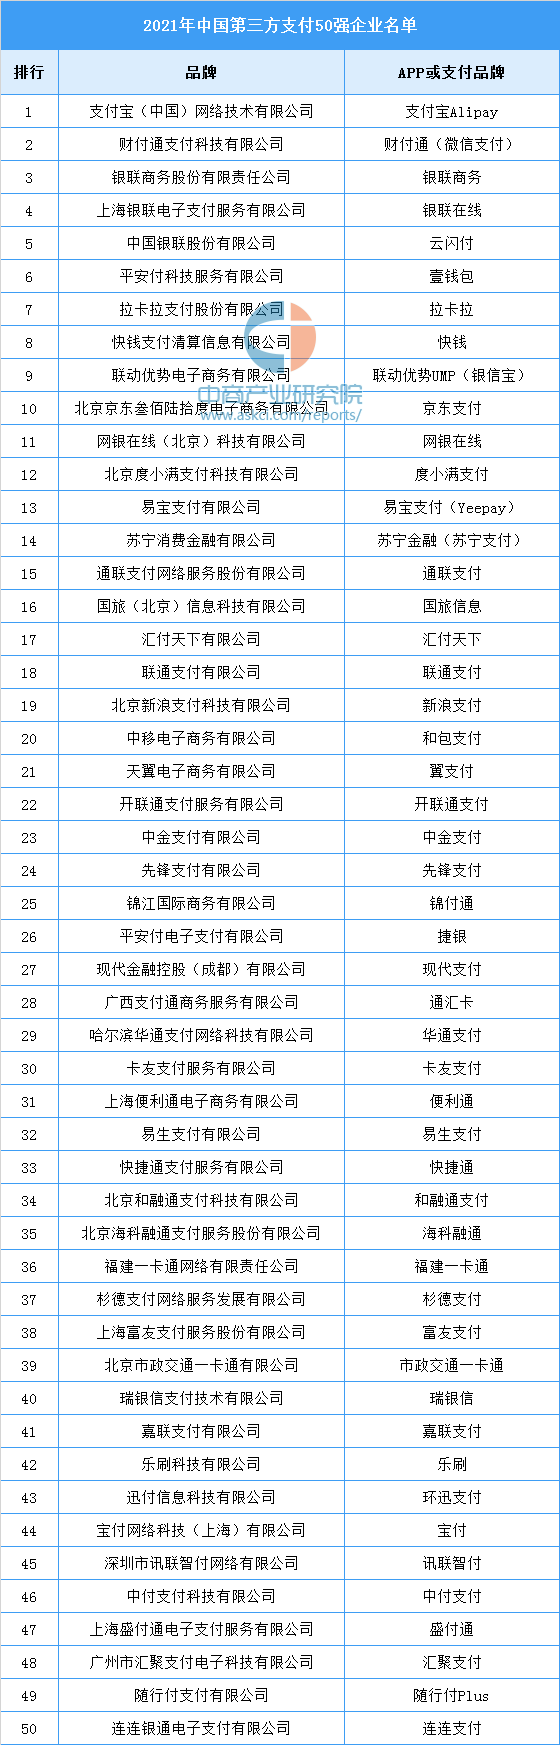 2021年中国第三方支付50强企业名单